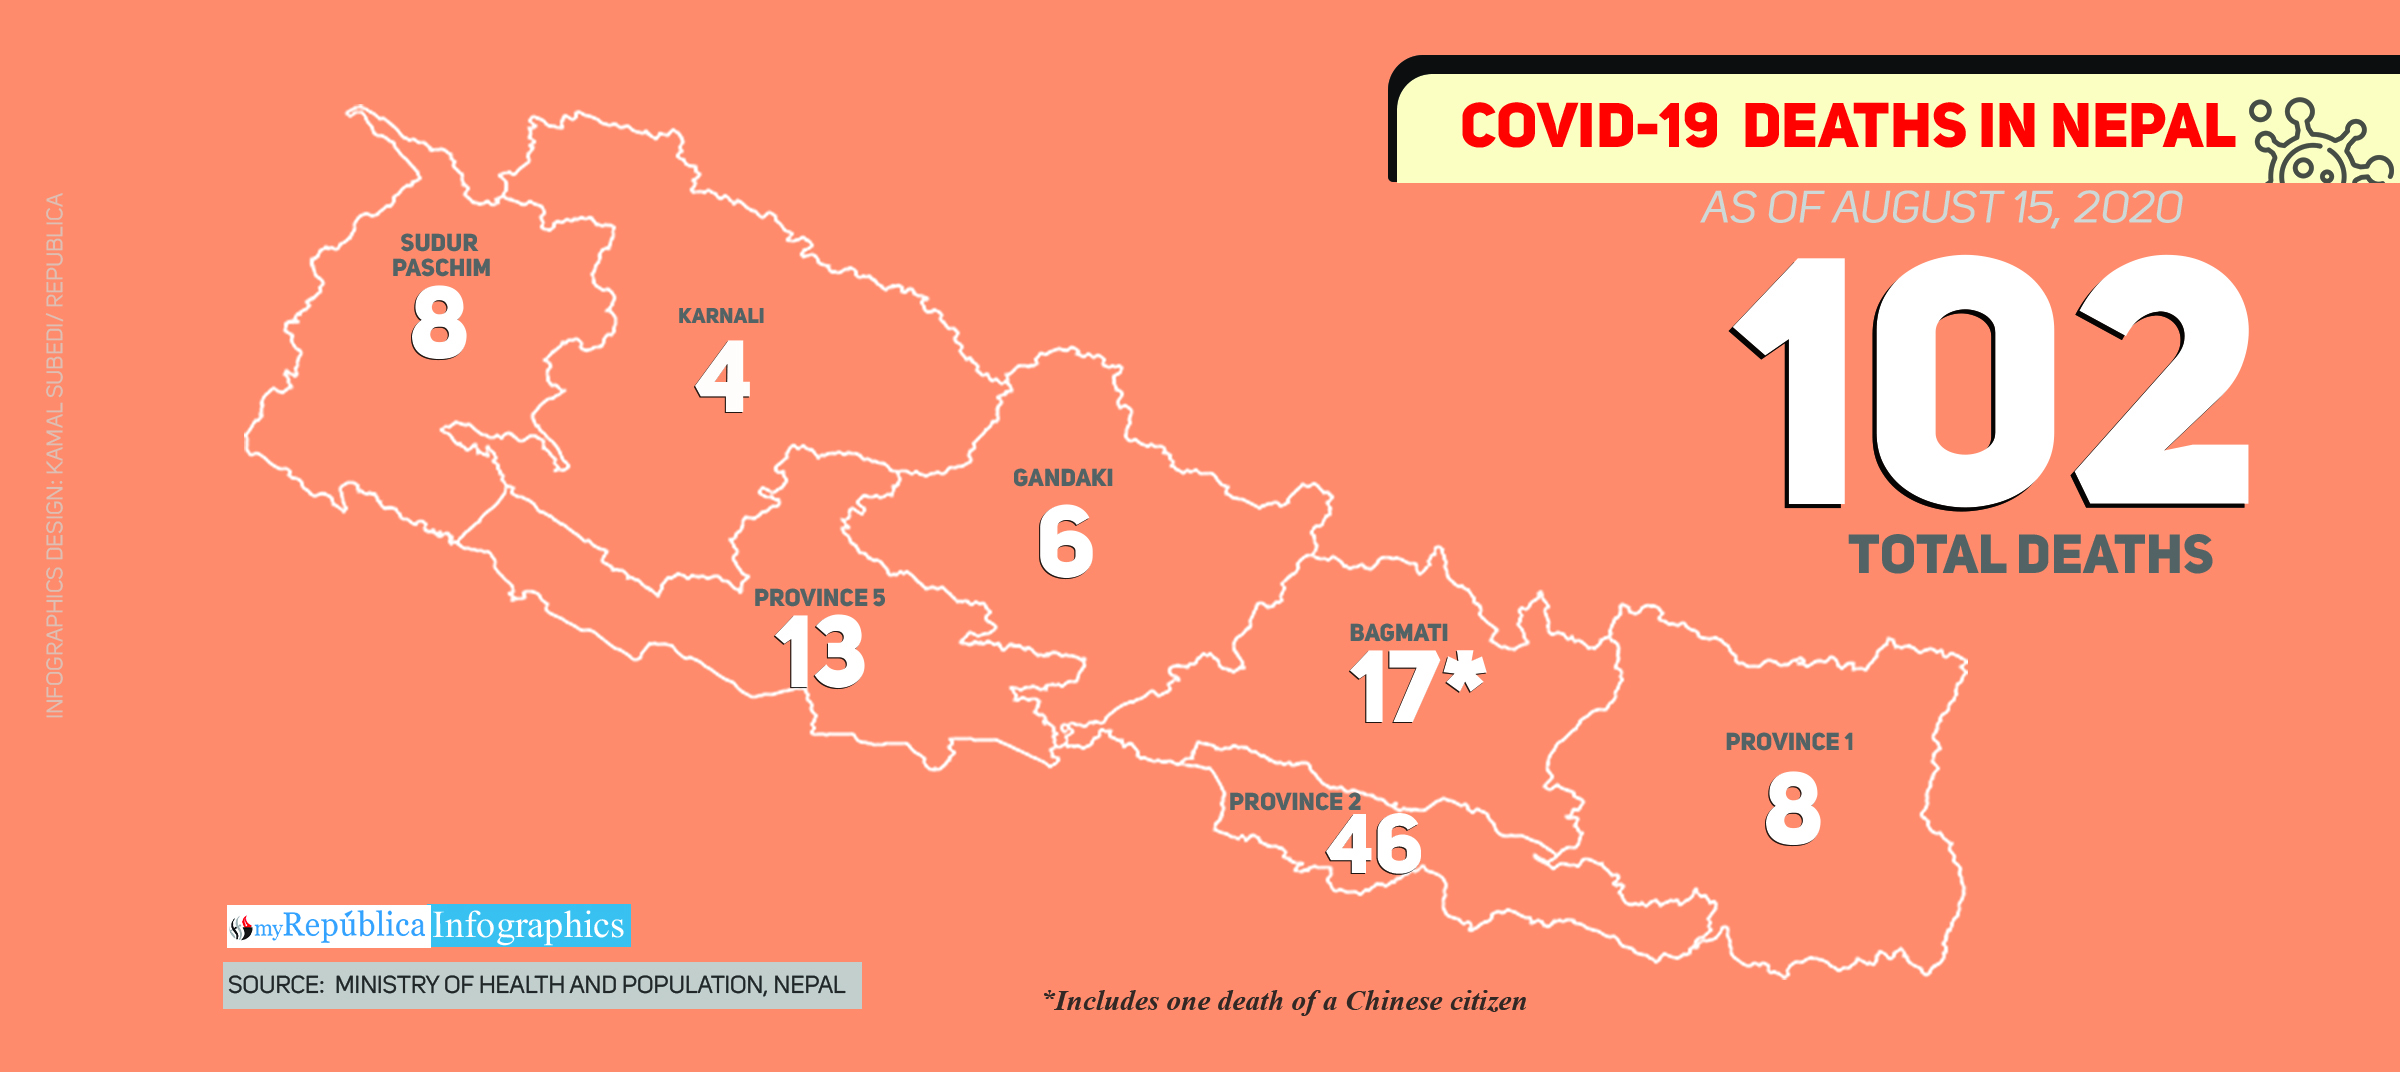 Nepal’s COVID-19 death toll surpasses 100-mark